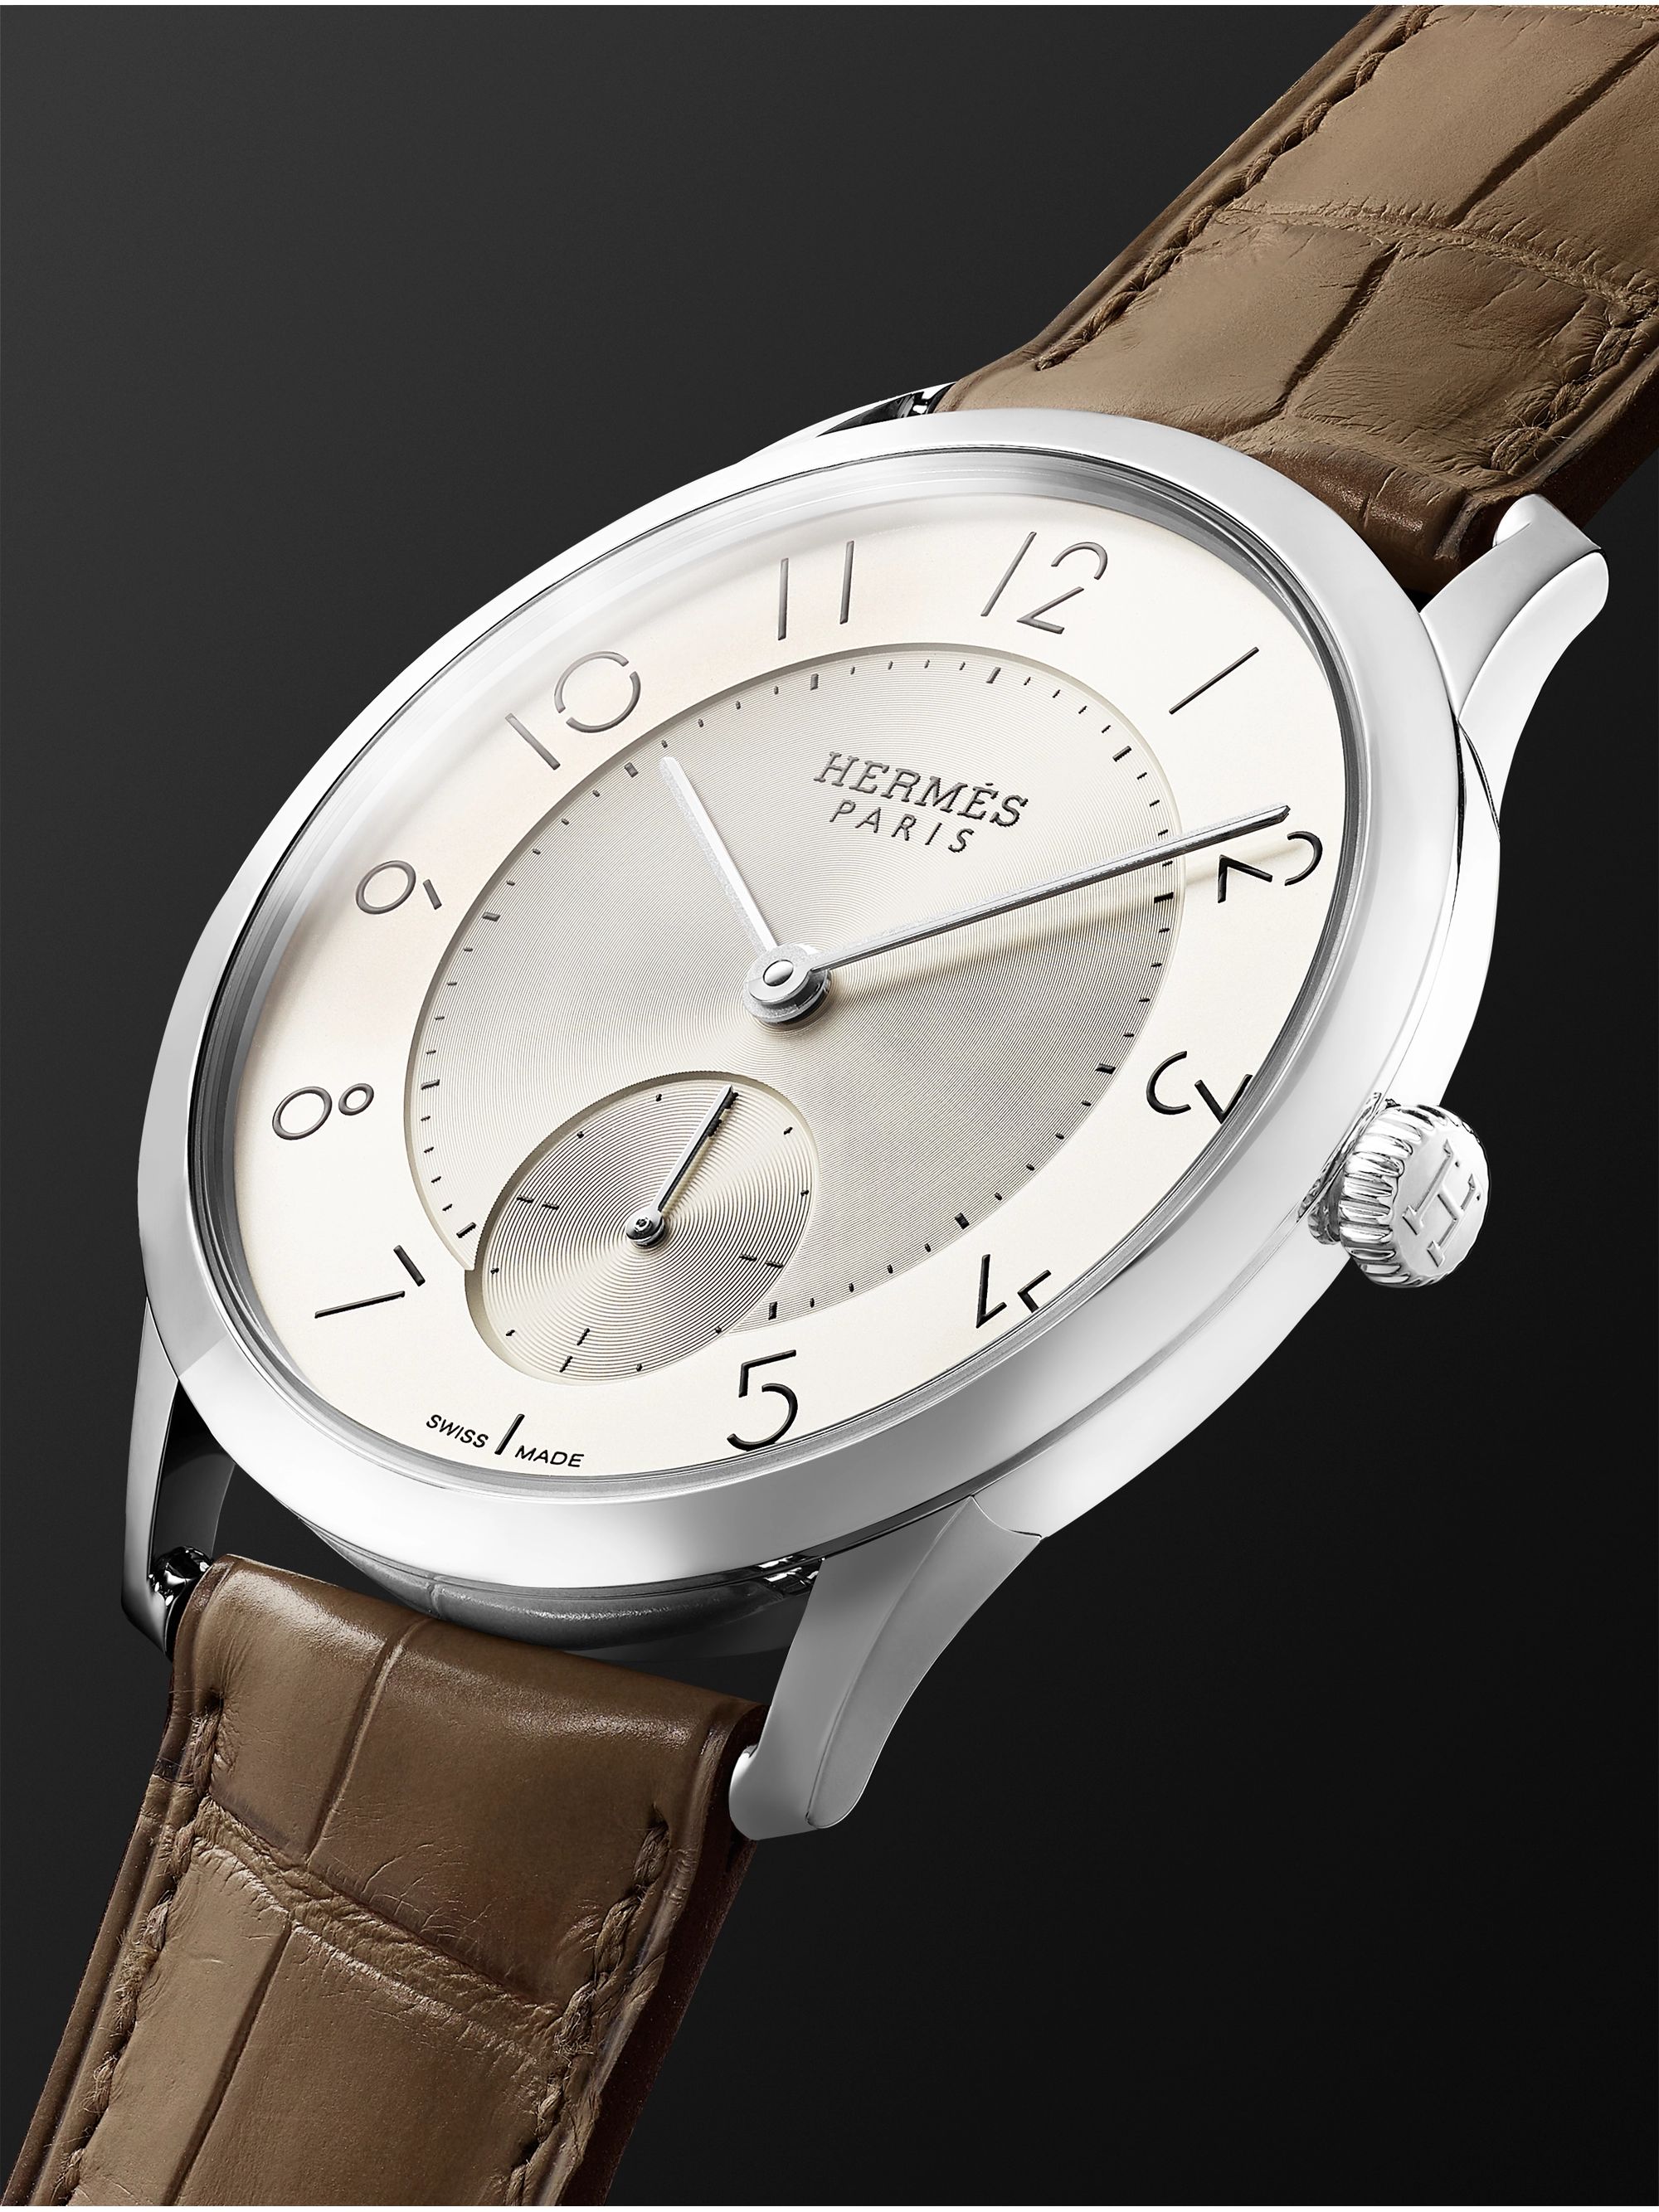 HERMÈS TIMEPIECES Slim d'Hermès Acier Automatic 39.5mm Stainless Steel and Alligator Watch, Ref. No. W045266WW00